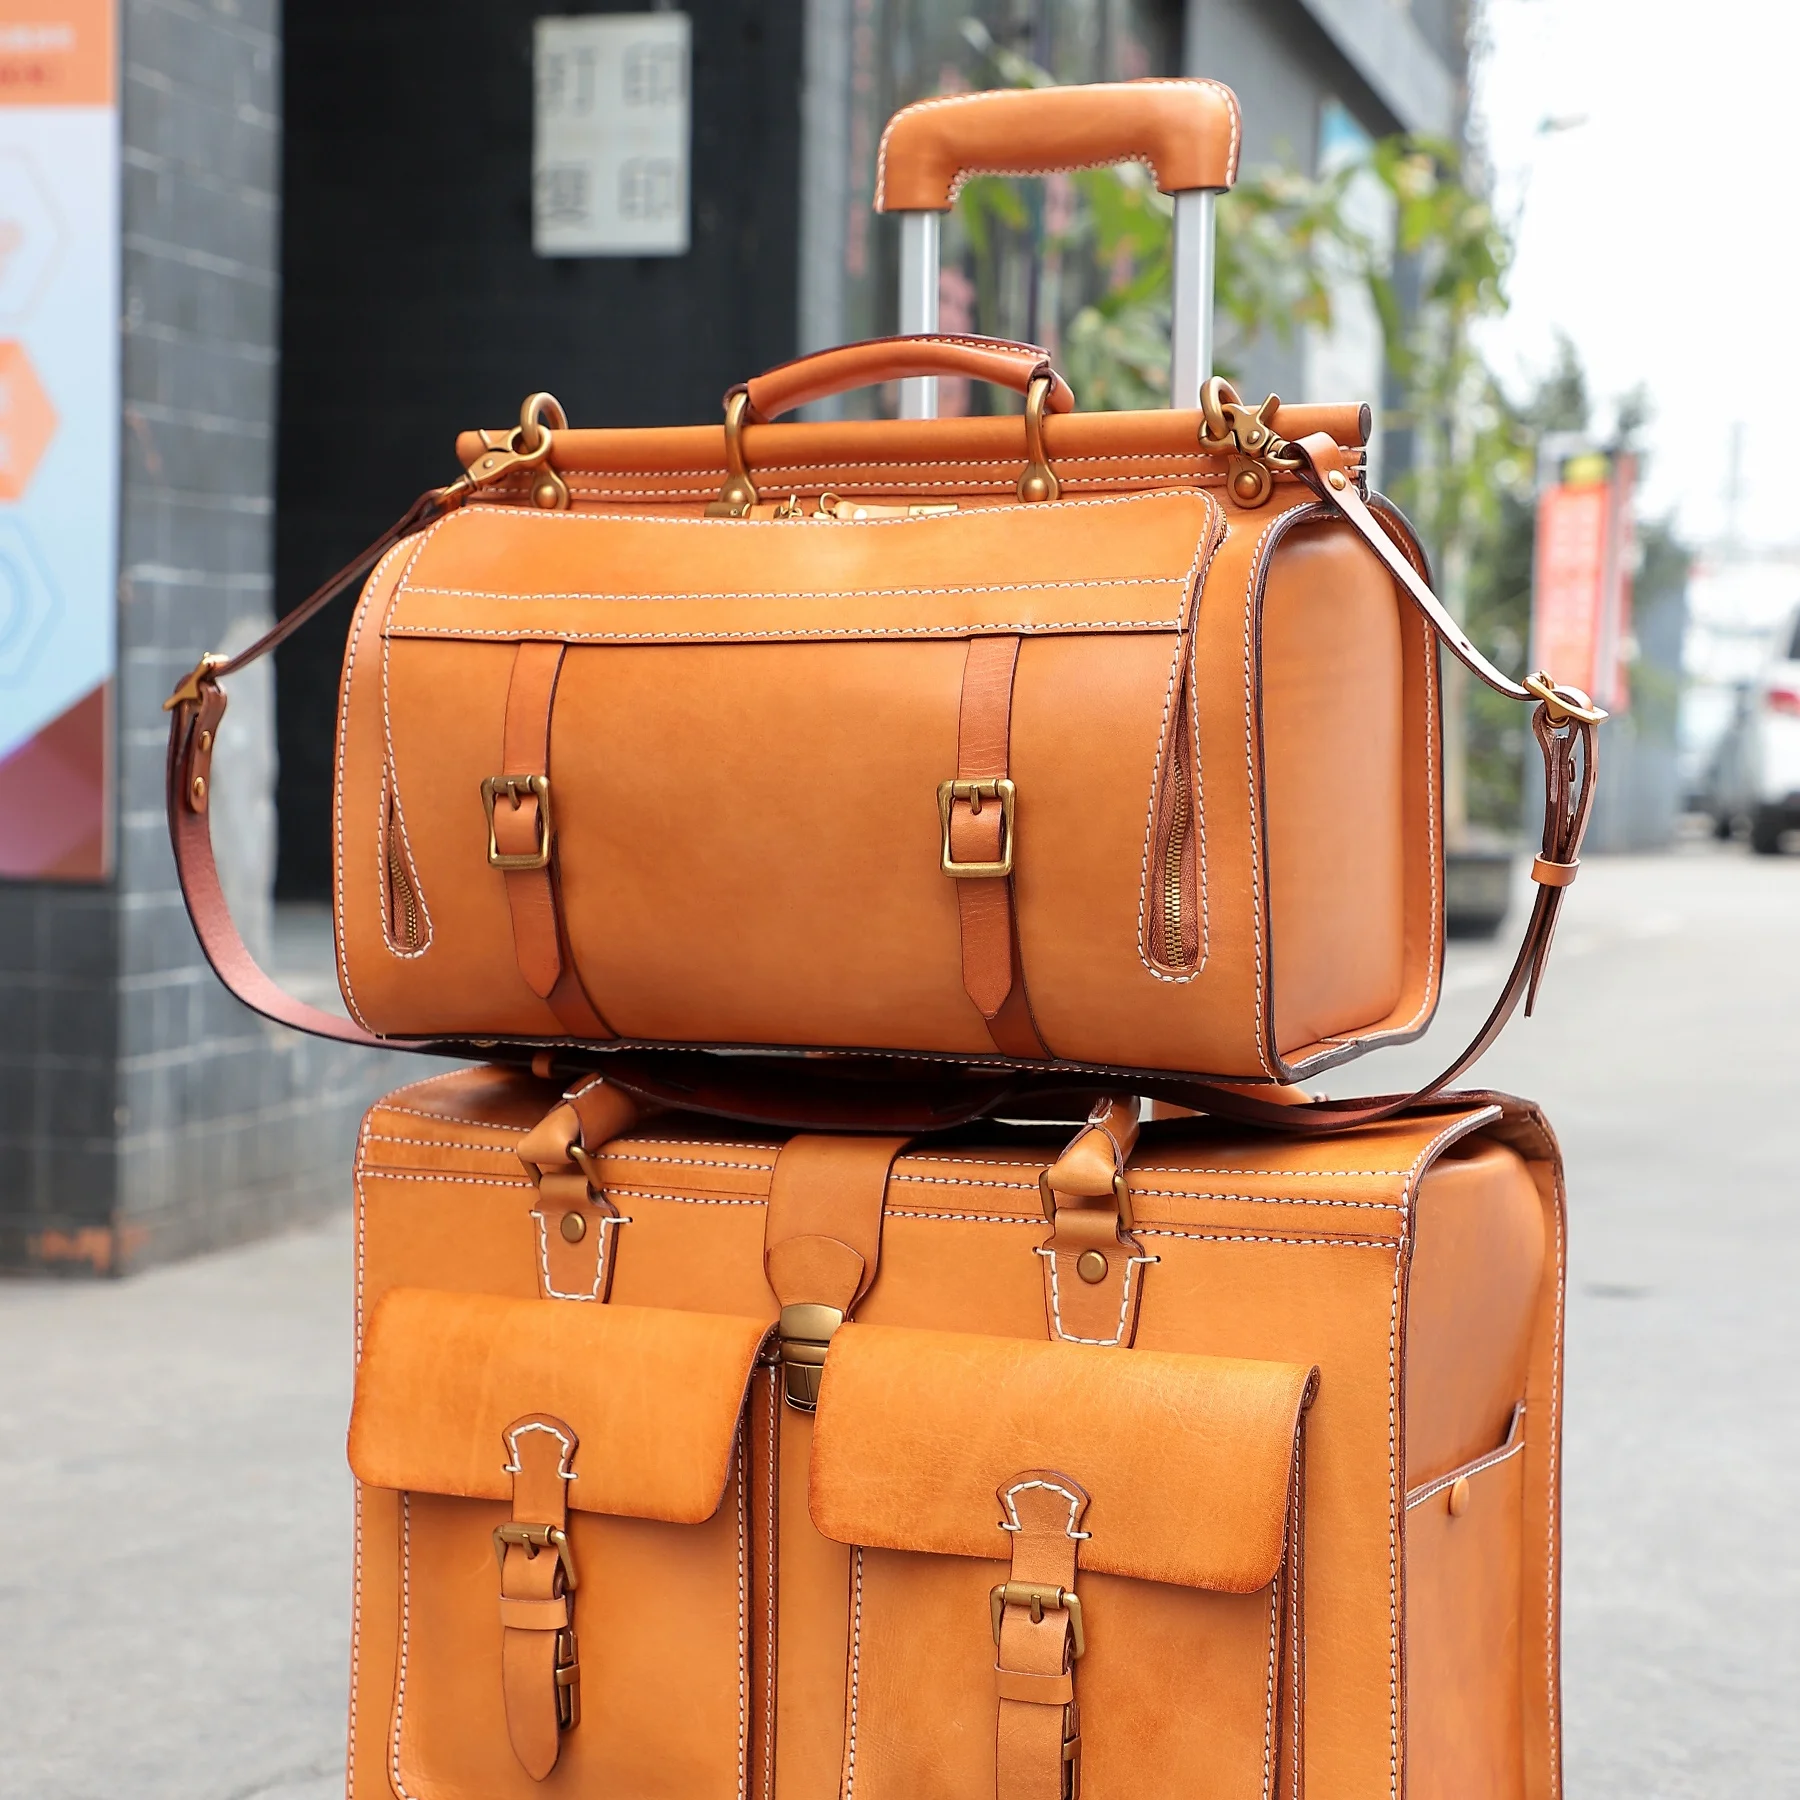 

Fashion Luggage Bag Travel Tote Handbags Outdoor Weekender Shoulder Luggage Waterproof Sports Genuine Leather Custom Duffel Bags, See below pictures showed